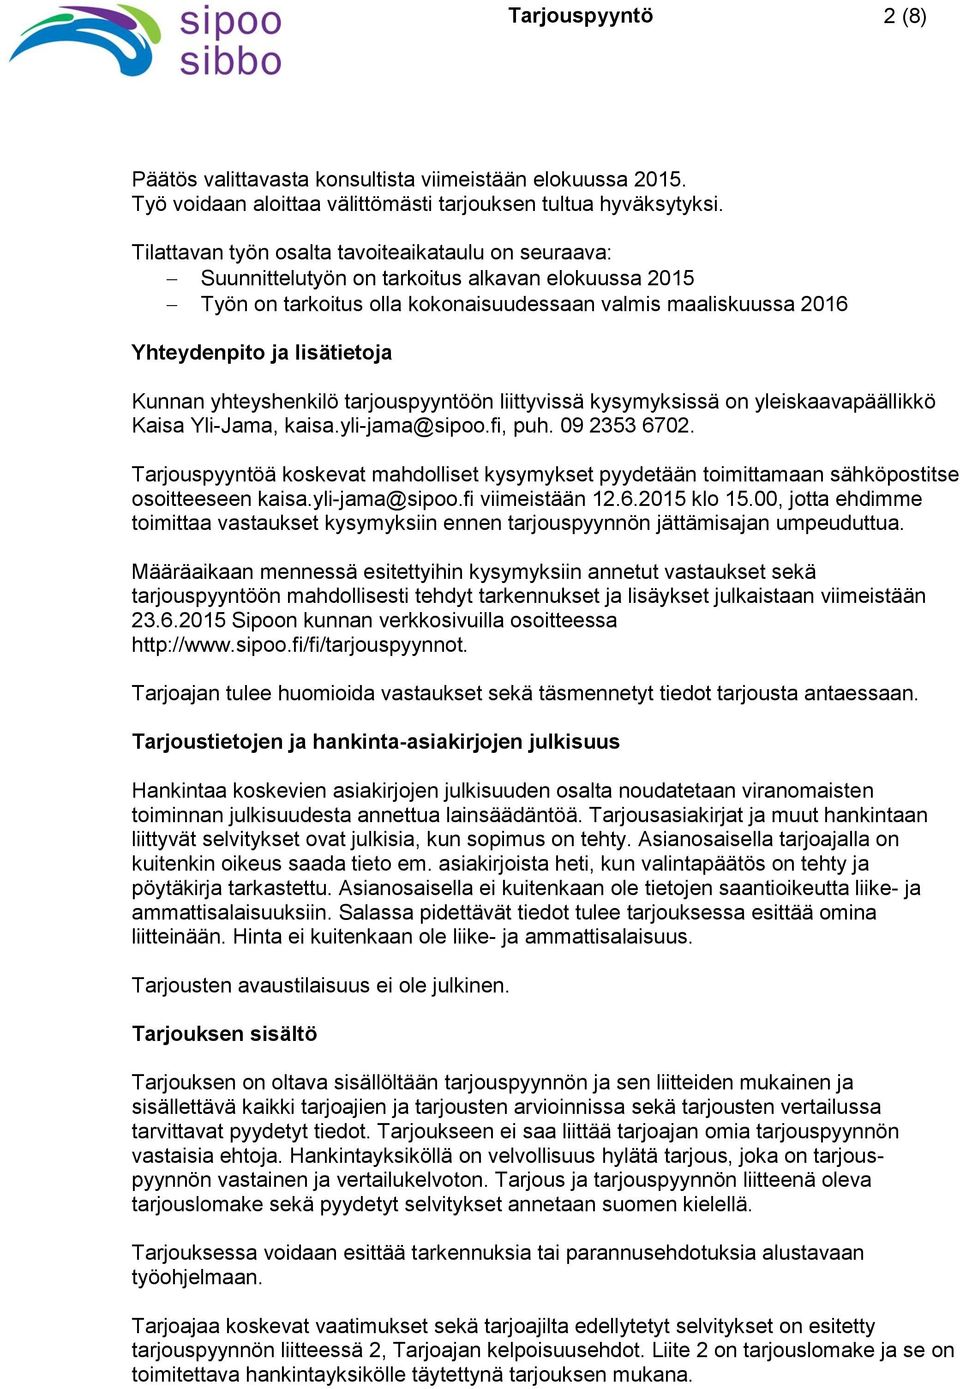 Kunnan yhteyshenkilö tarjouspyyntöön liittyvissä kysymyksissä on yleiskaavapäällikkö Kaisa Yli-Jama, kaisa.yli-jama@sipoo.fi, puh. 09 2353 6702.